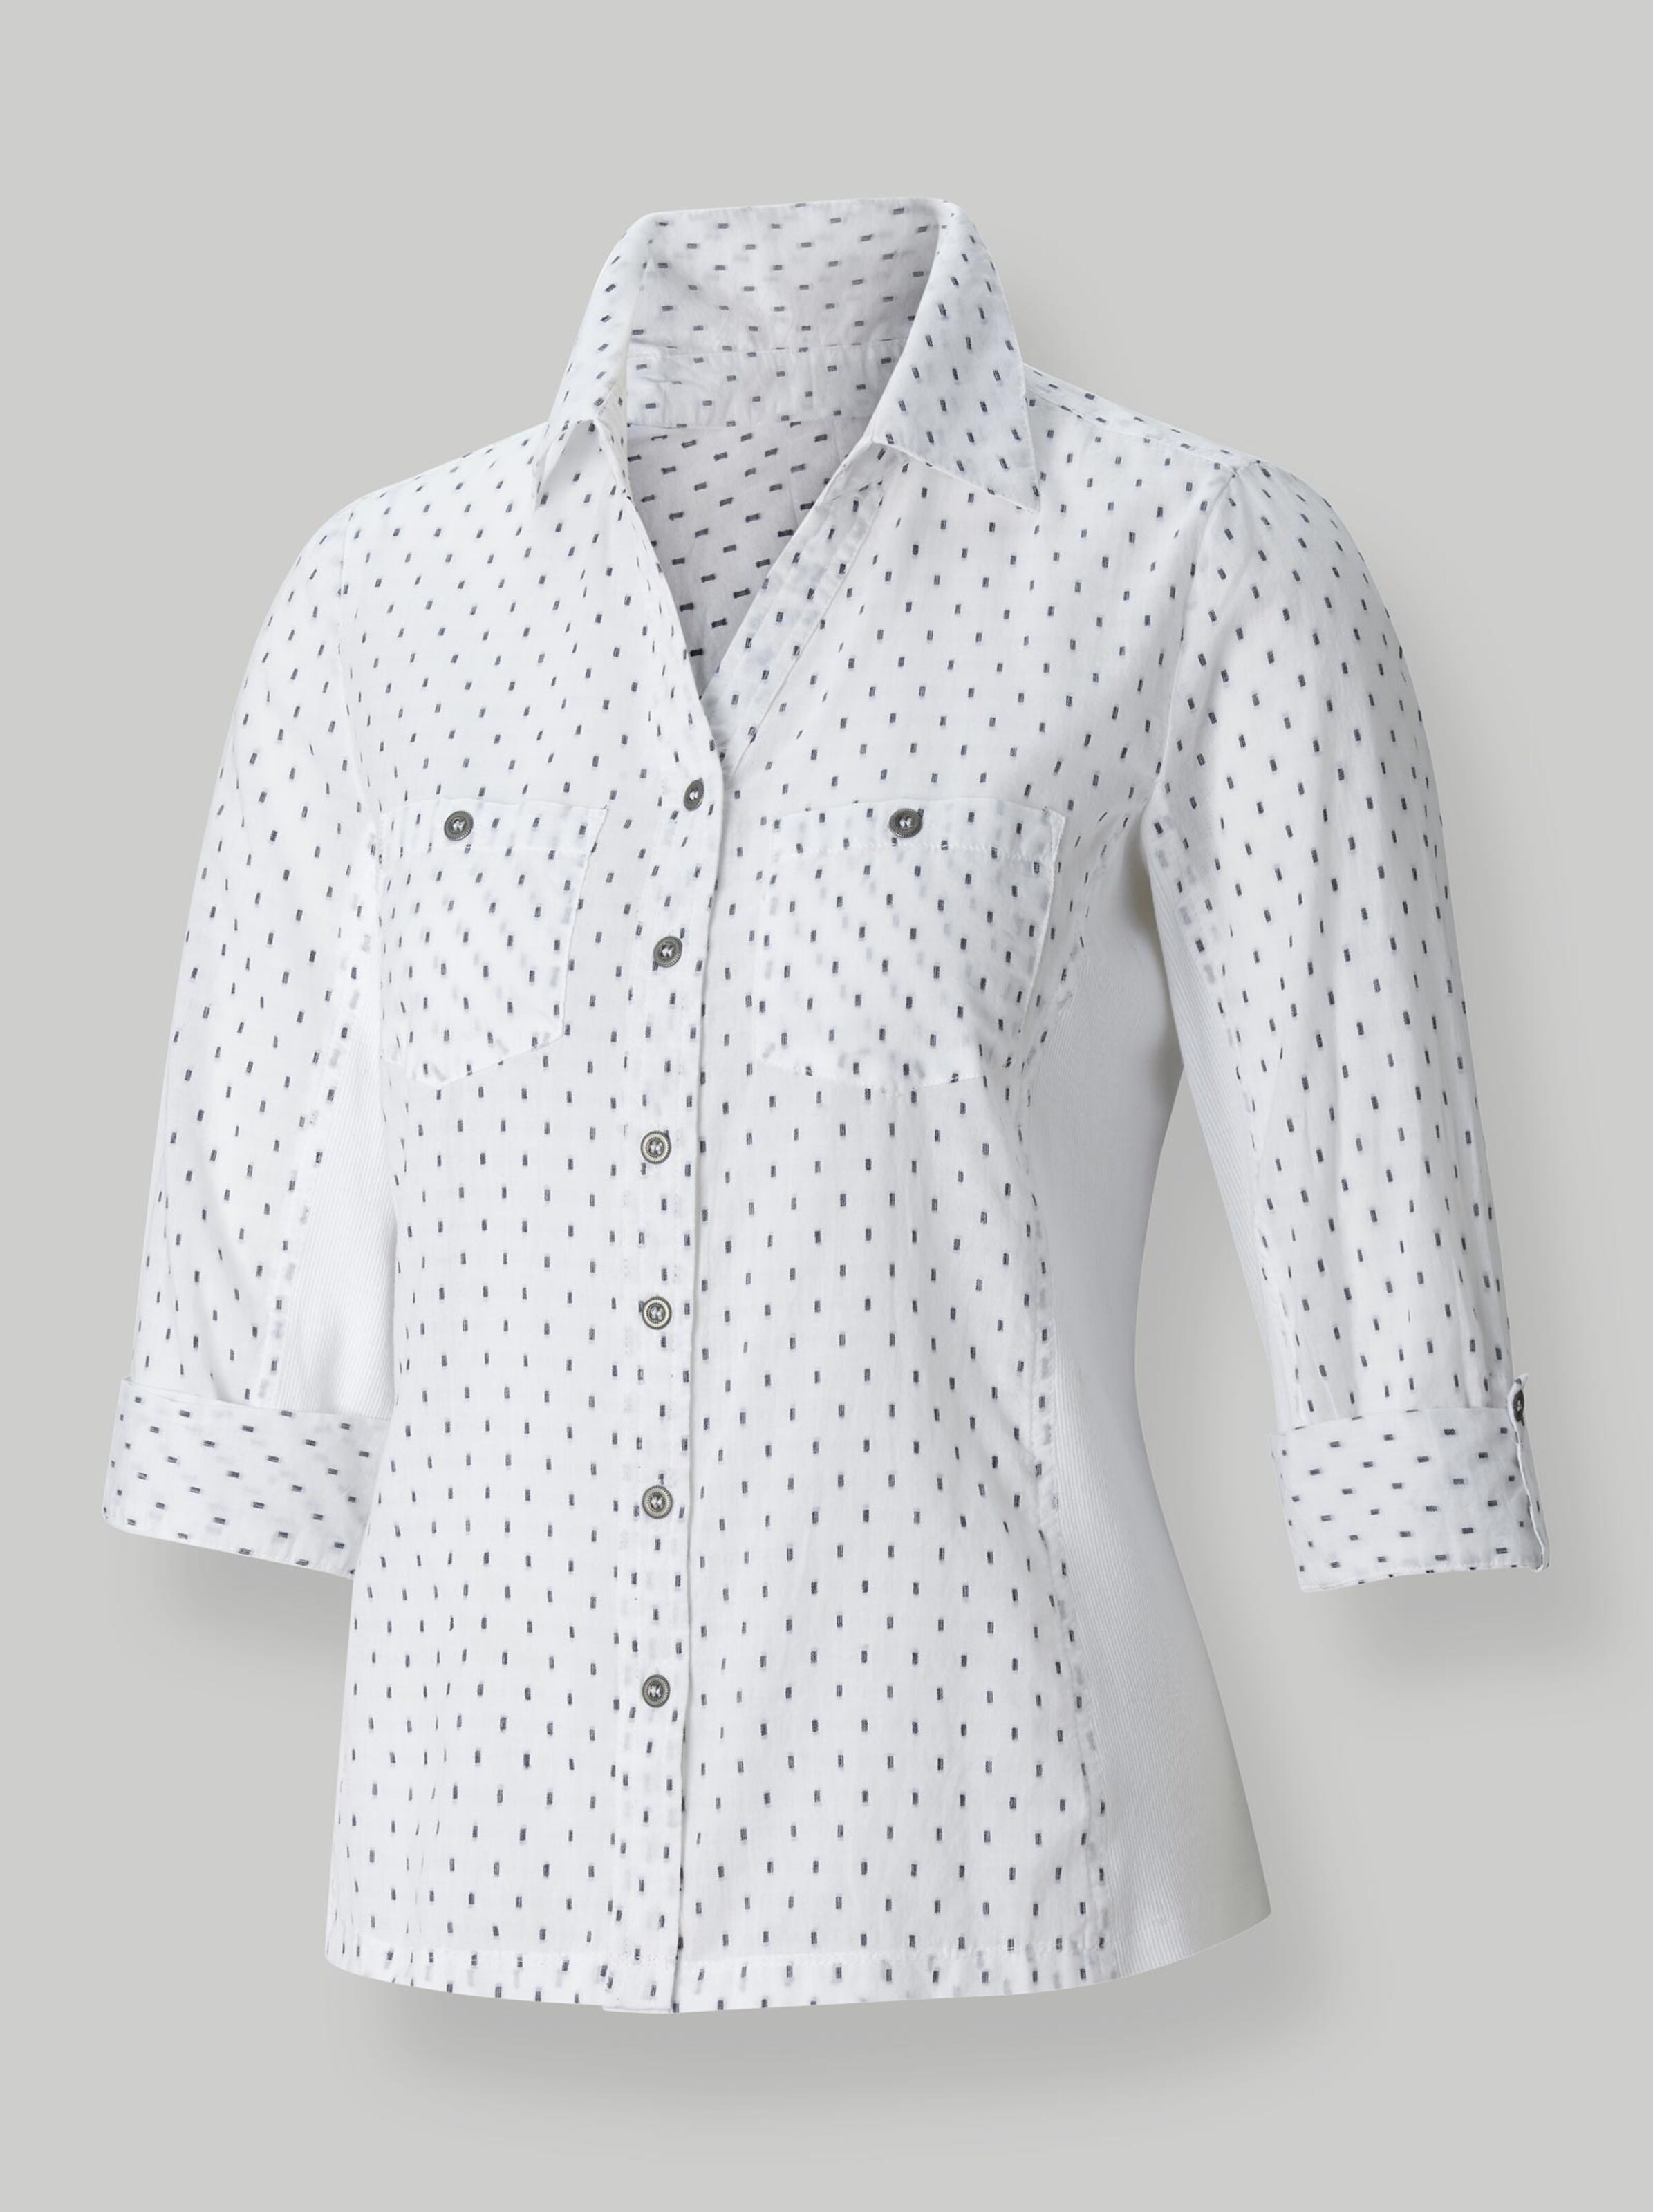 Damenmode Blusen Hemdbluse in weiß-getupft 